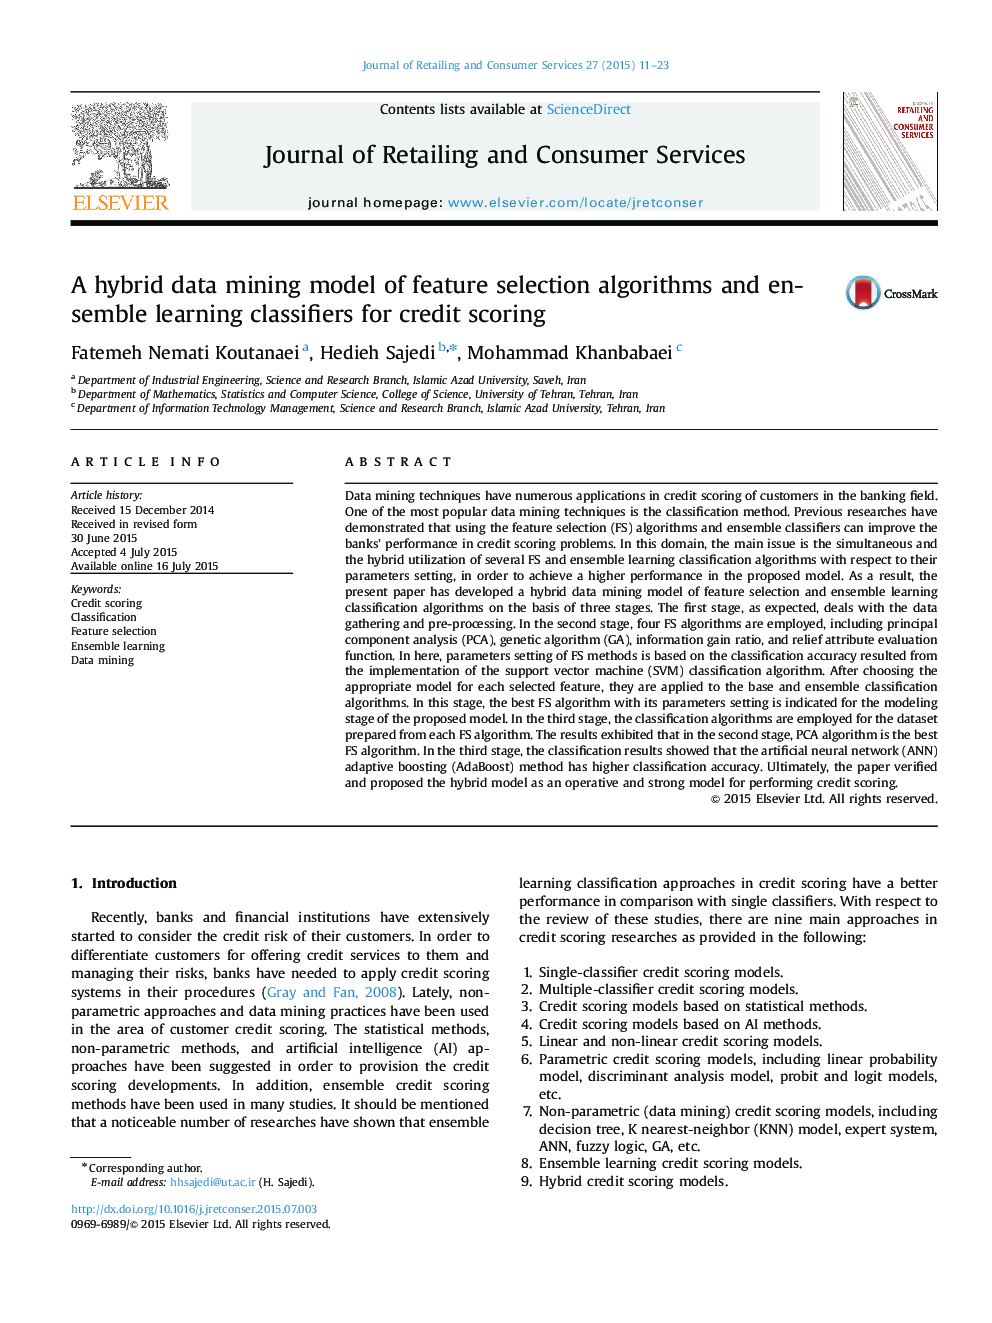 مدل داده کاوی هیبریدی برای الگوریتمهای انتخاب ویژگی و طبقه بندهای یادگیری ترکیبی بمنظور امتیازدهی اعتباری